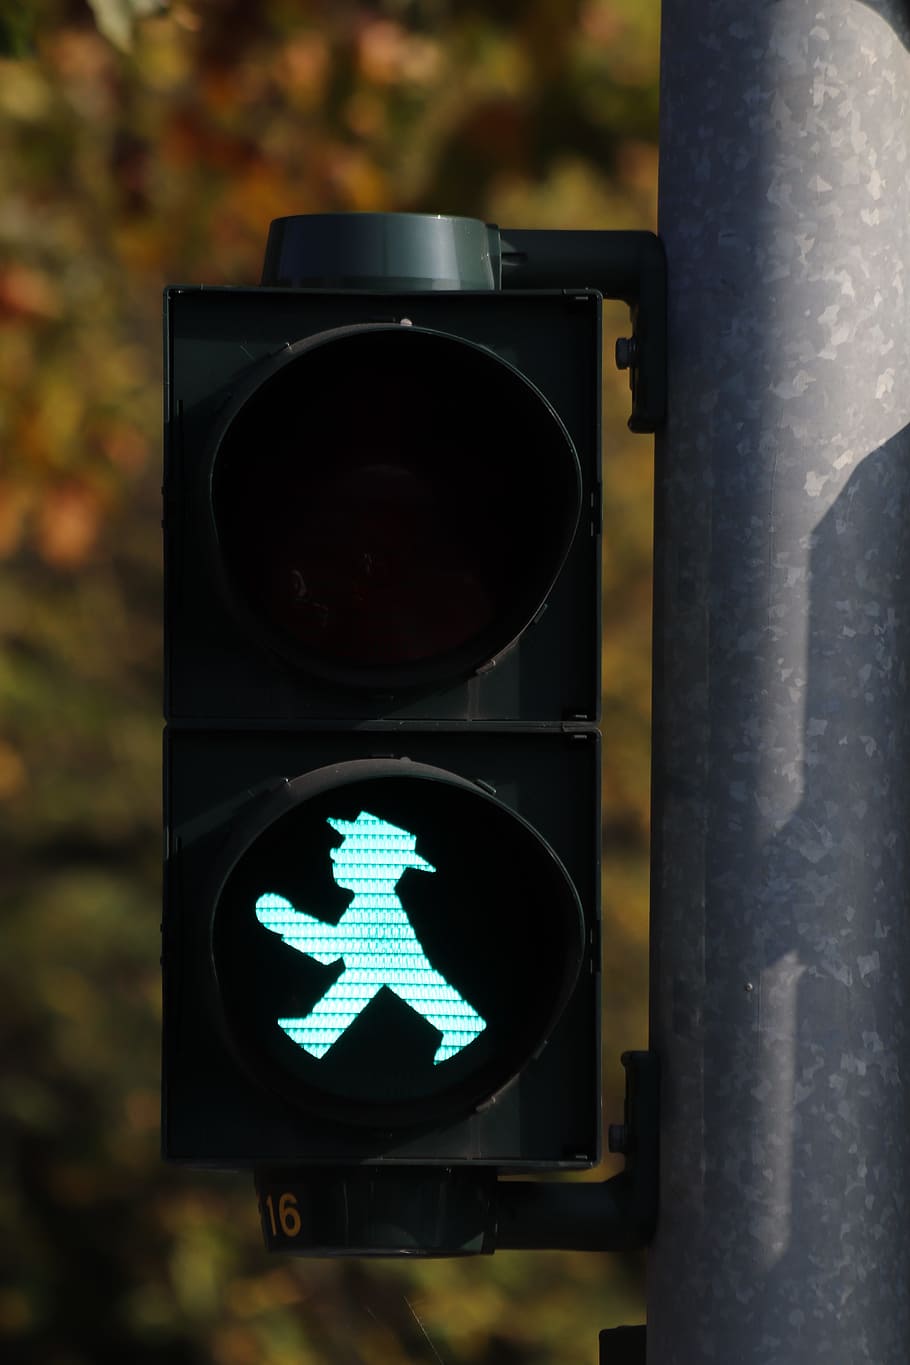 黒, 歩く, サインライト, リトルグリーンマン, 交通信号灯, 緑, 横断歩道, 交通信号, クロス, 道路標識